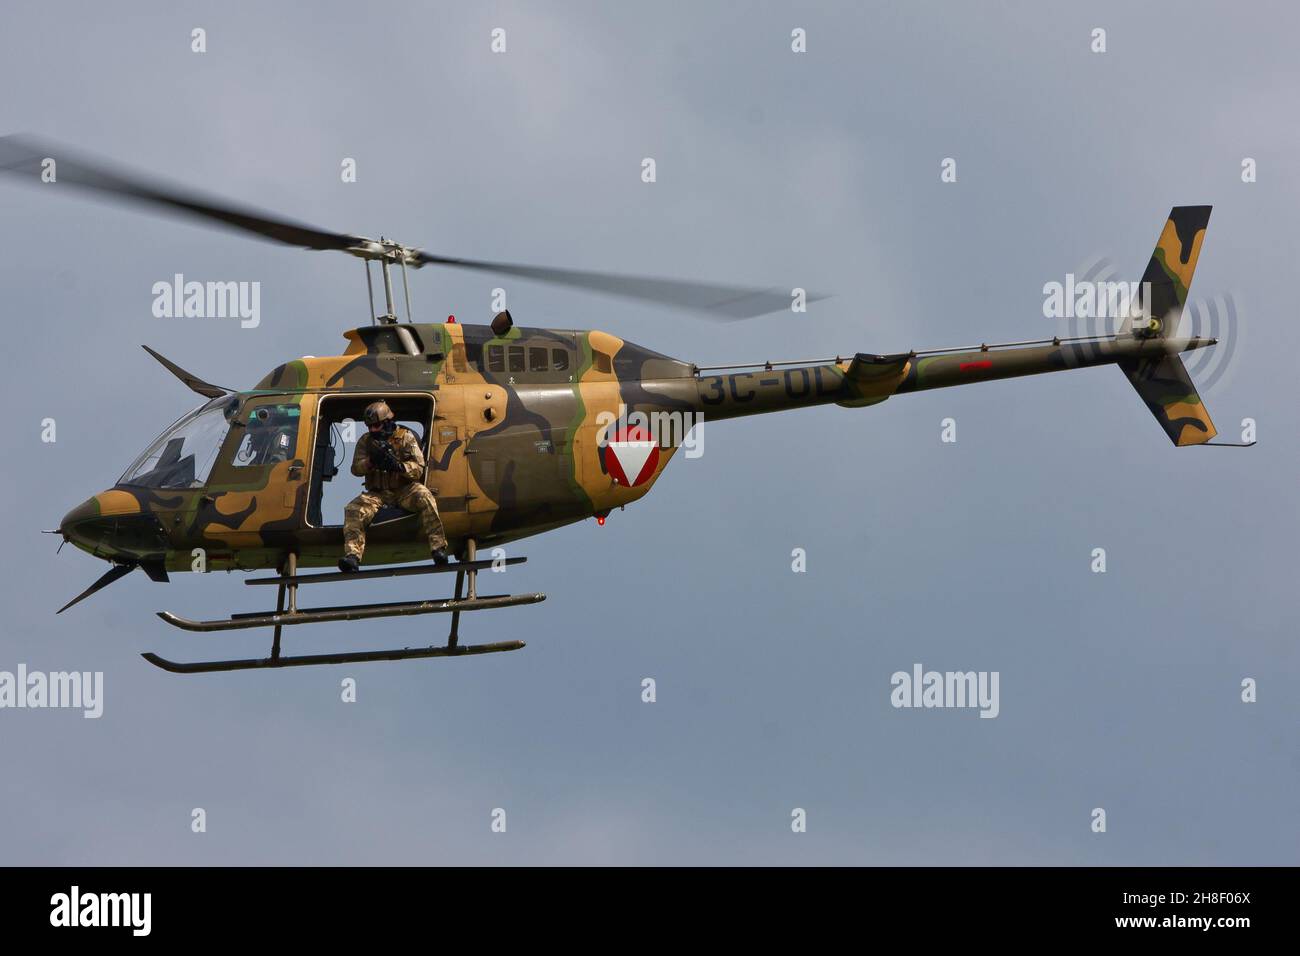 ALLENTSTEIG, ÖSTERREICH - 07. Mai 2014: Bell OH-58-Angriffshubschrauber der Österreichischen Luftwaffe mit Türbeschützer in der Luft Stockfoto